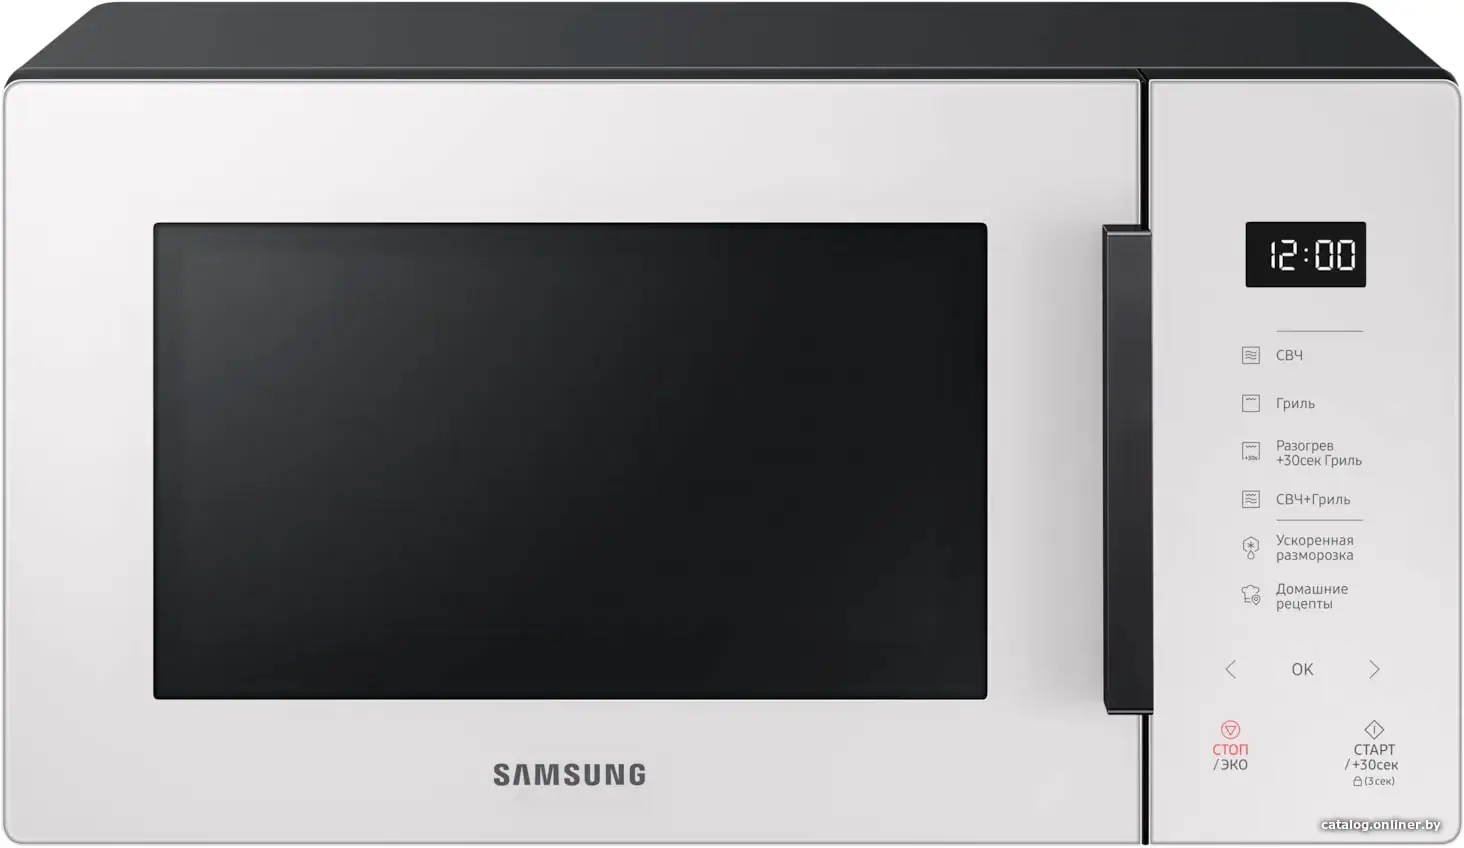 Купить Микроволновая печь Samsung MG23T5018AE черный/белый, цена, опт и розница